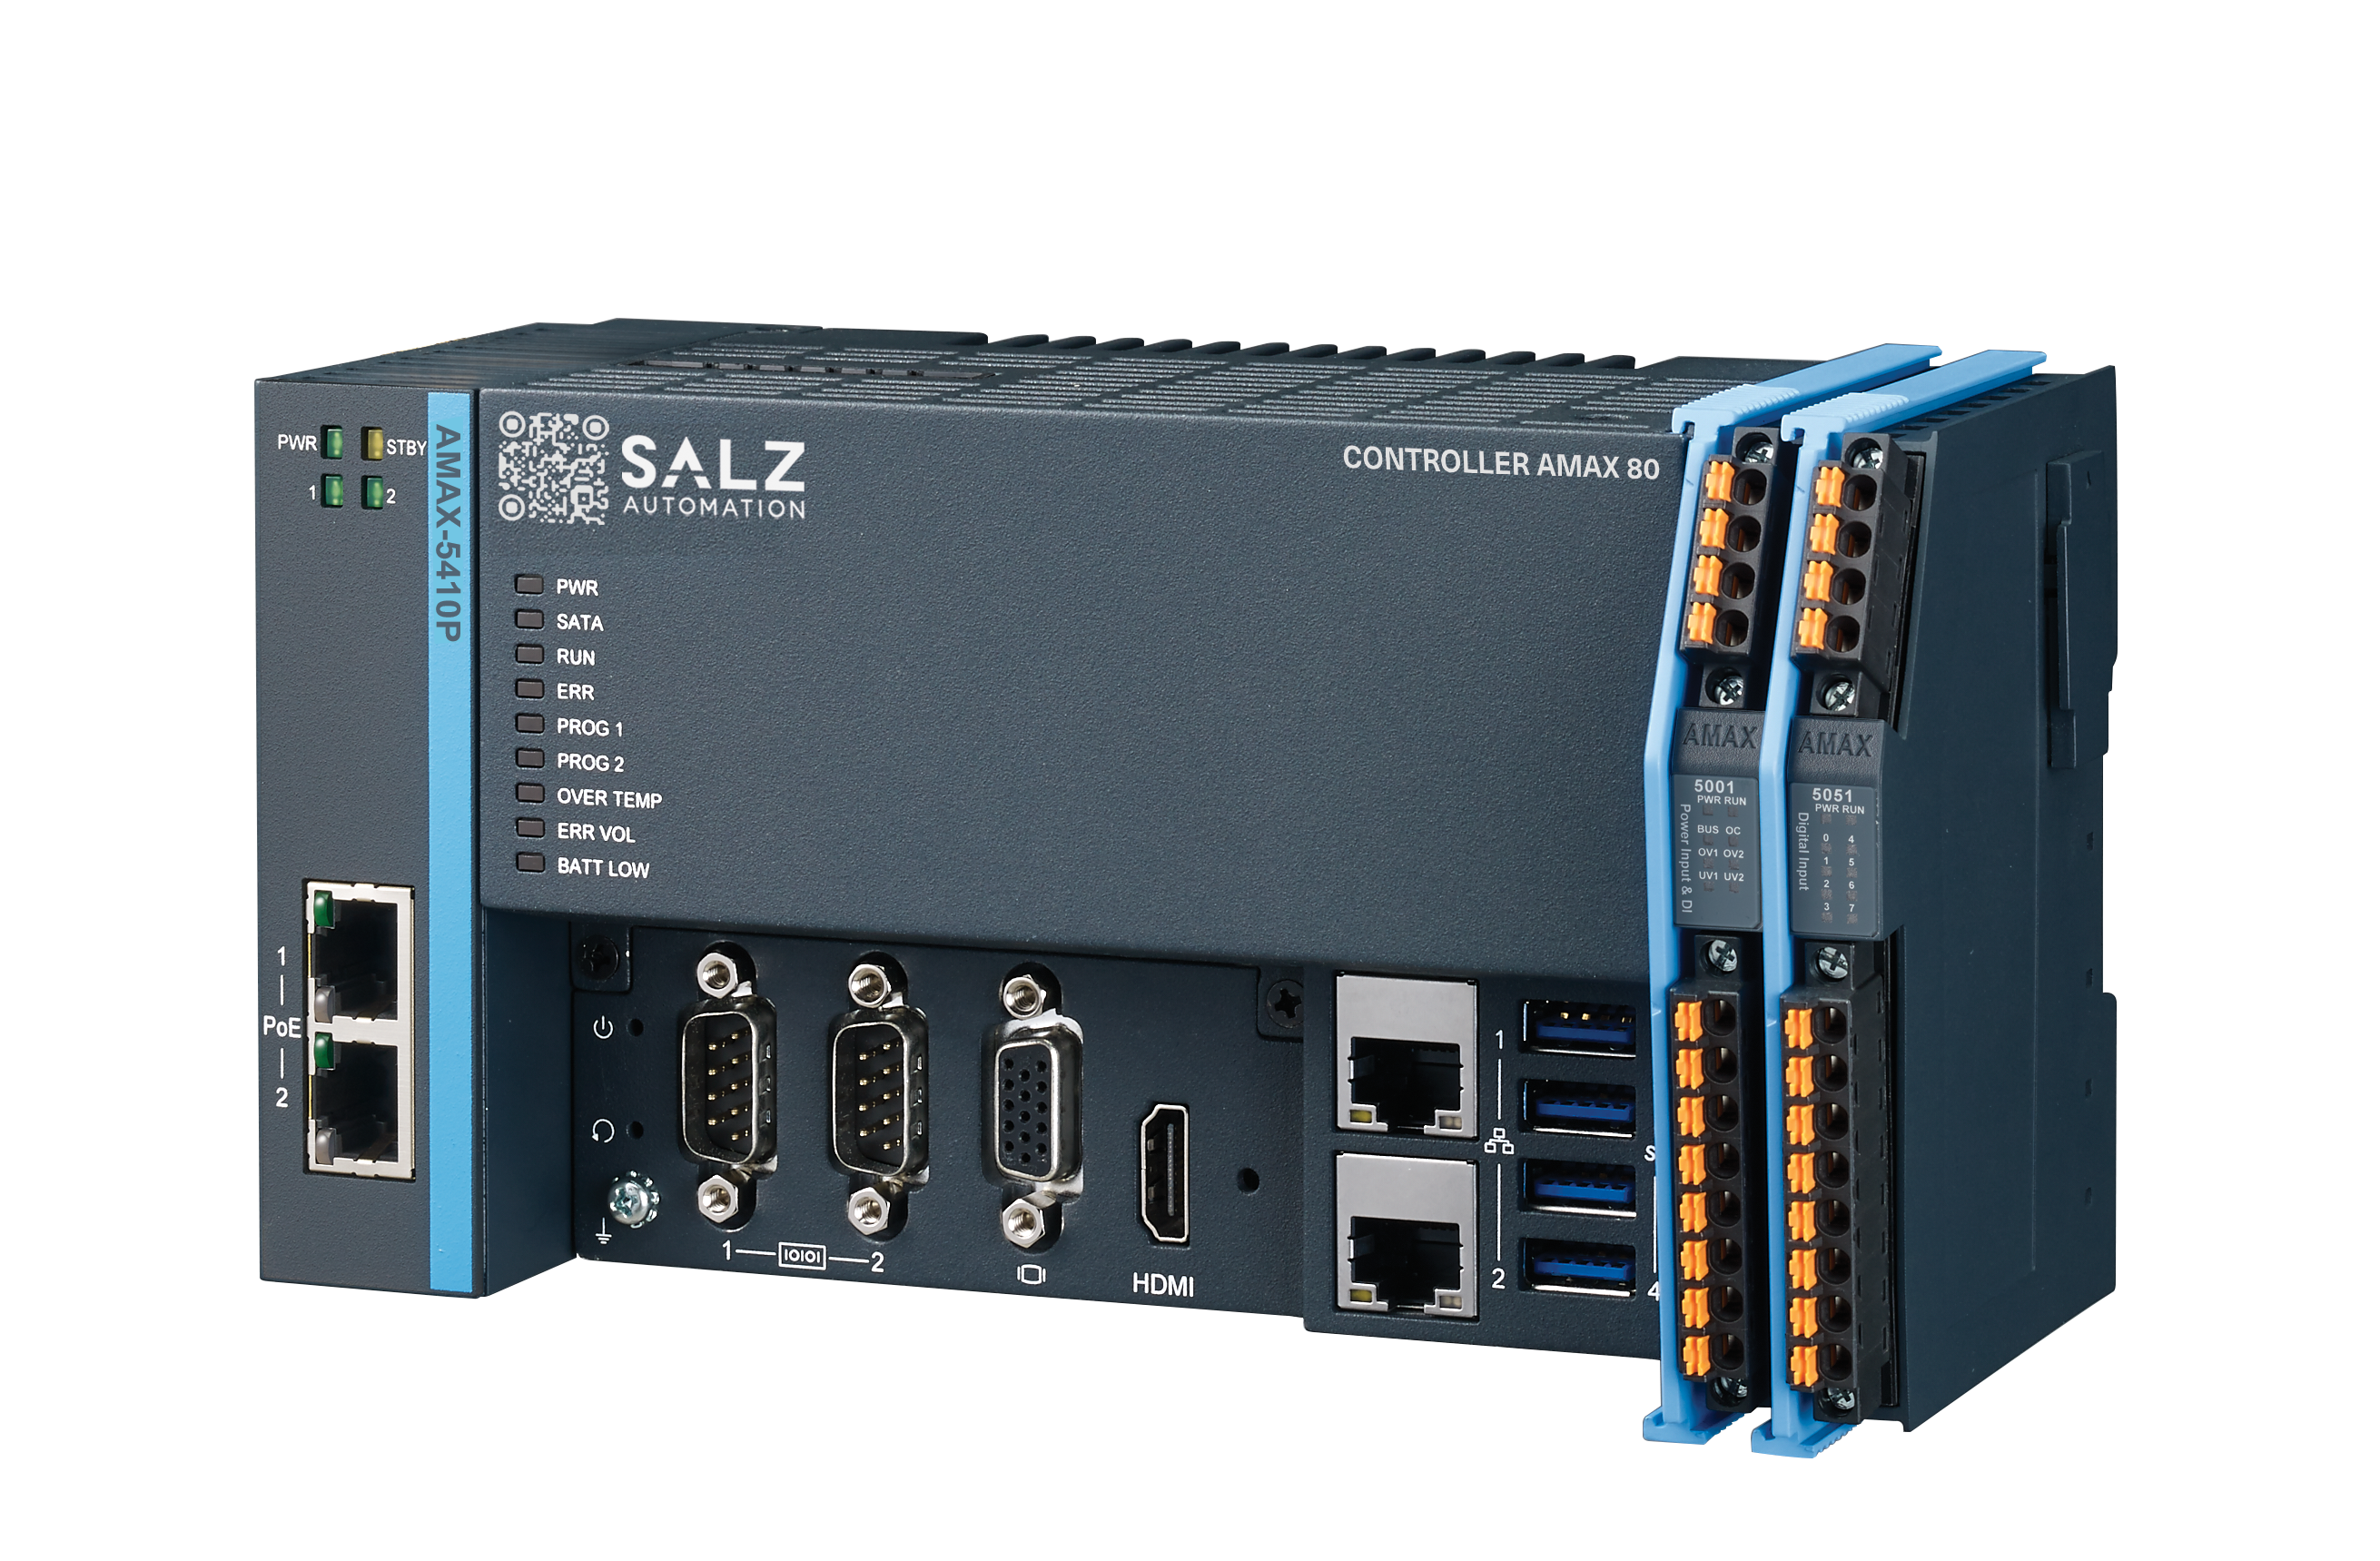 SALZ Automation System Hardware